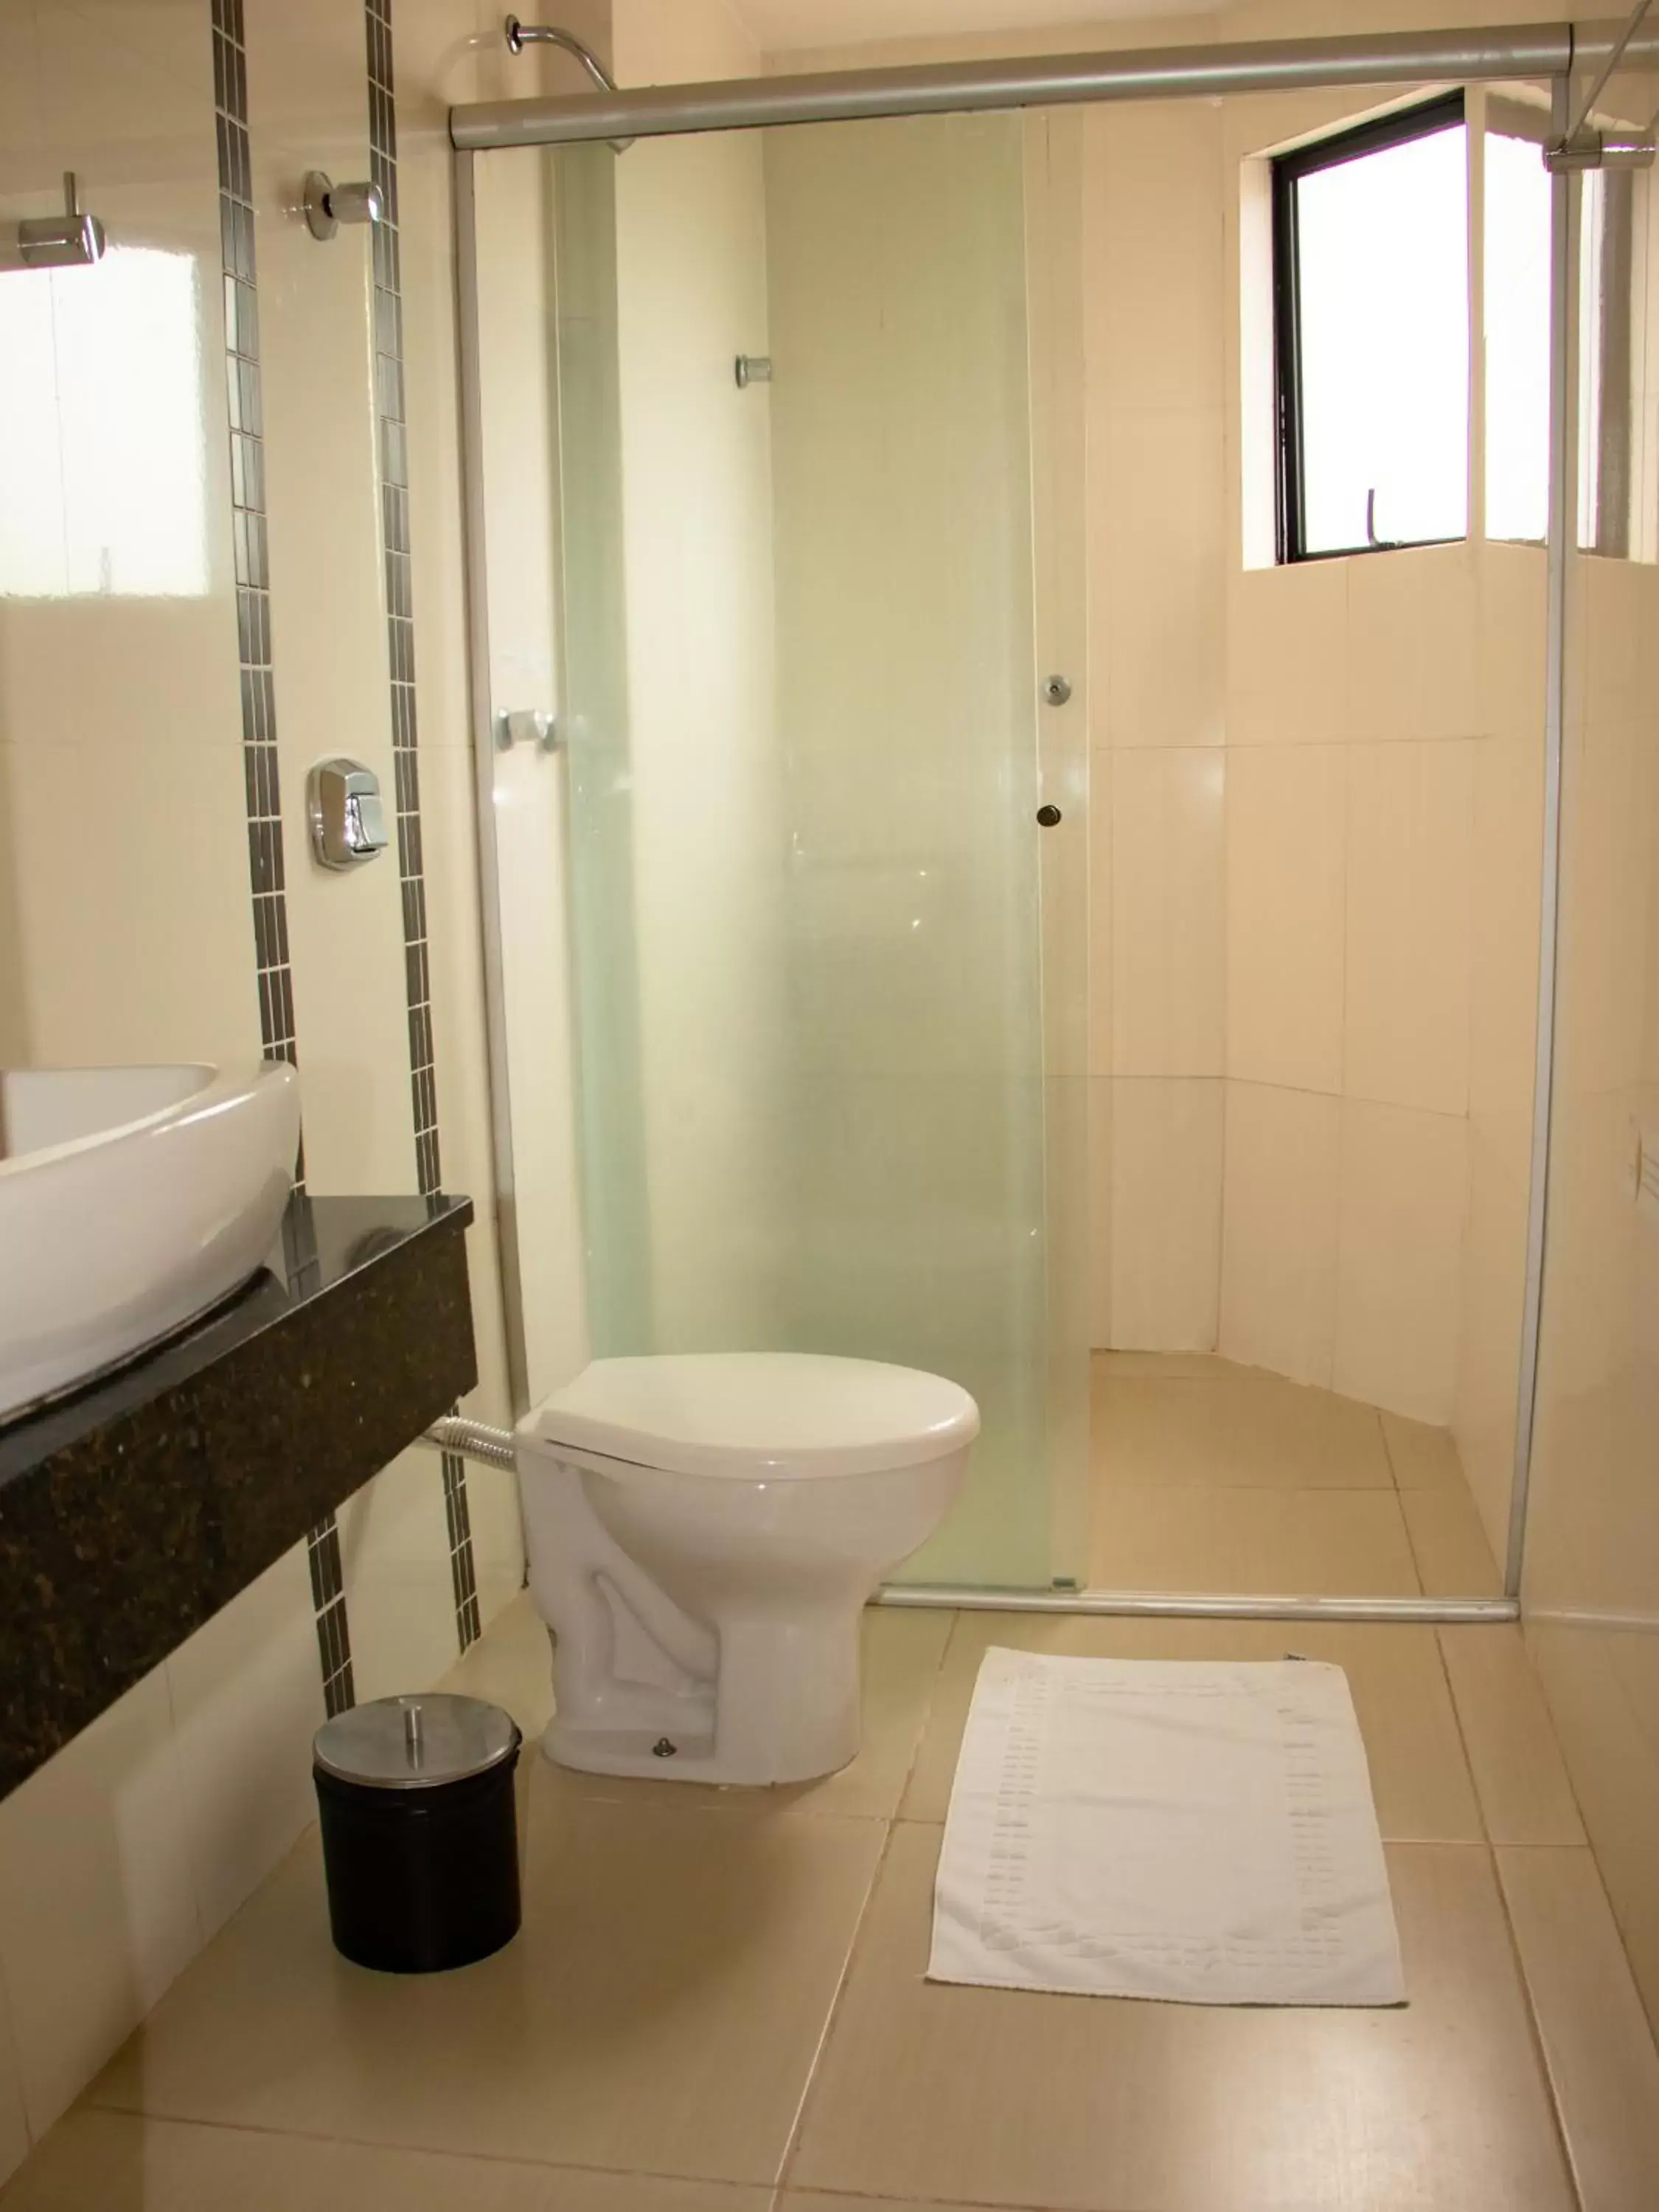 Shower, Bathroom in Iguassu Express Hotel